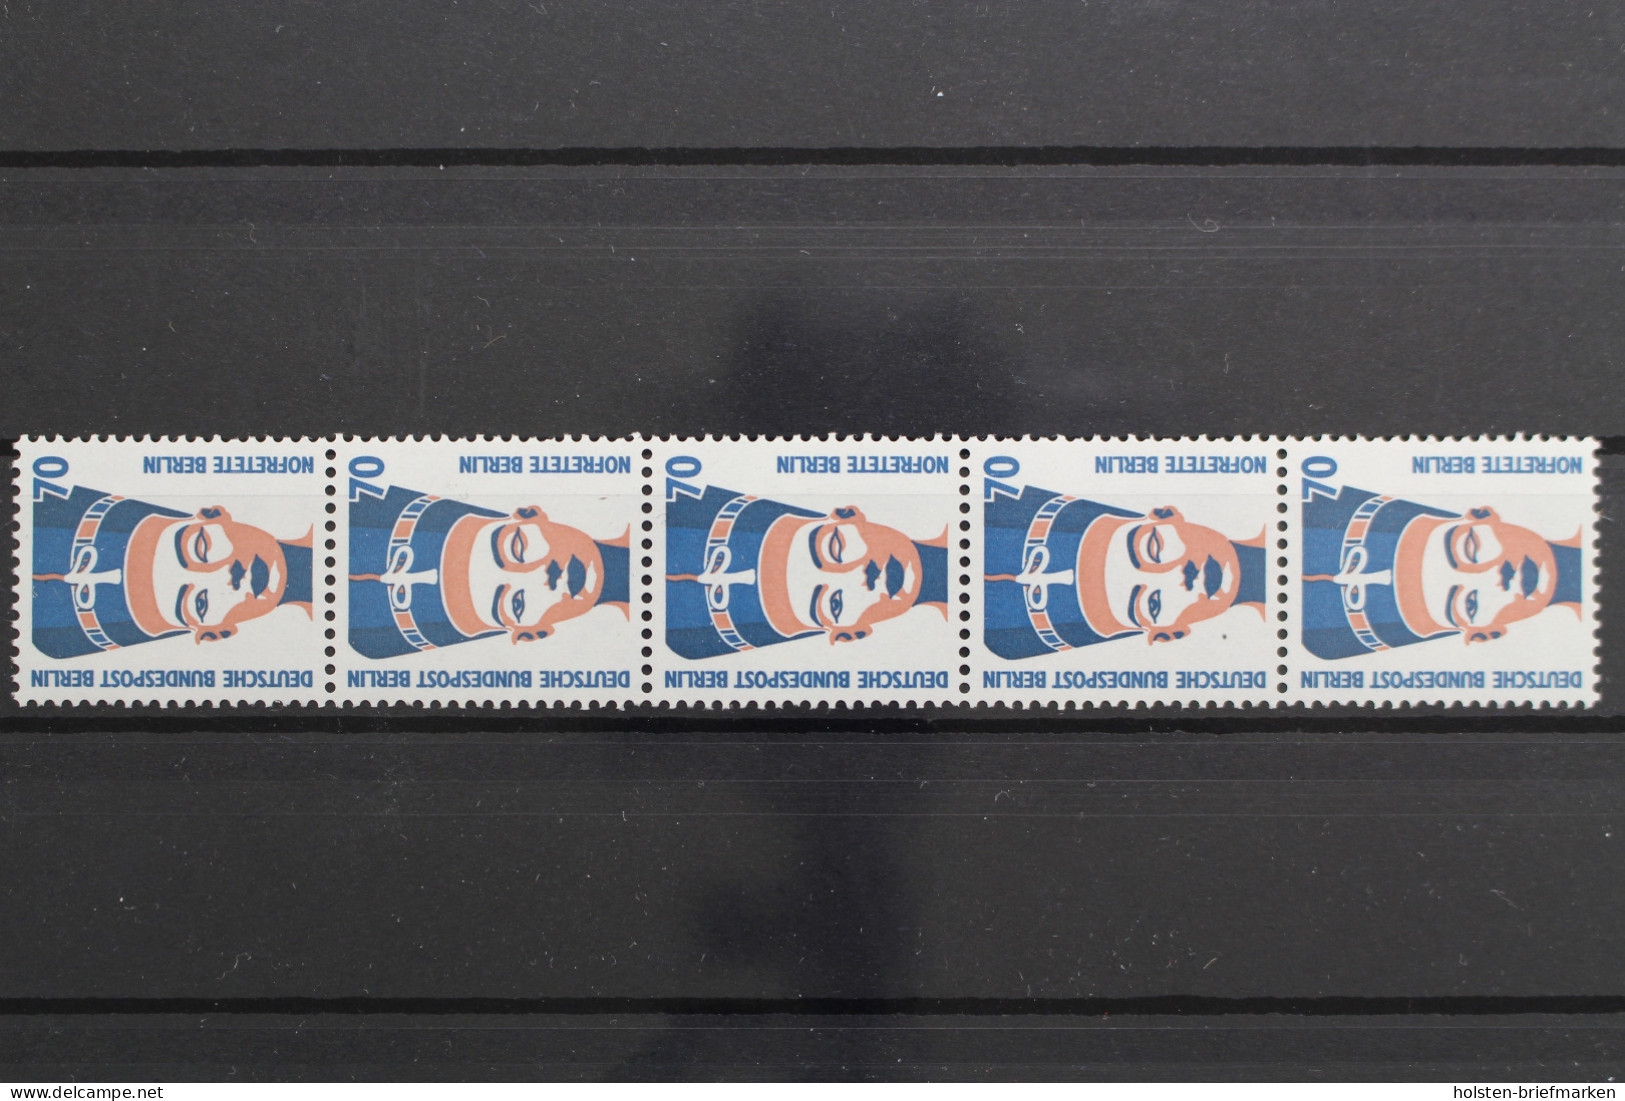 Berlin, MiNr. 814 R, Fünferstreifen, ZN 315, Postfrisch - Rollenmarken